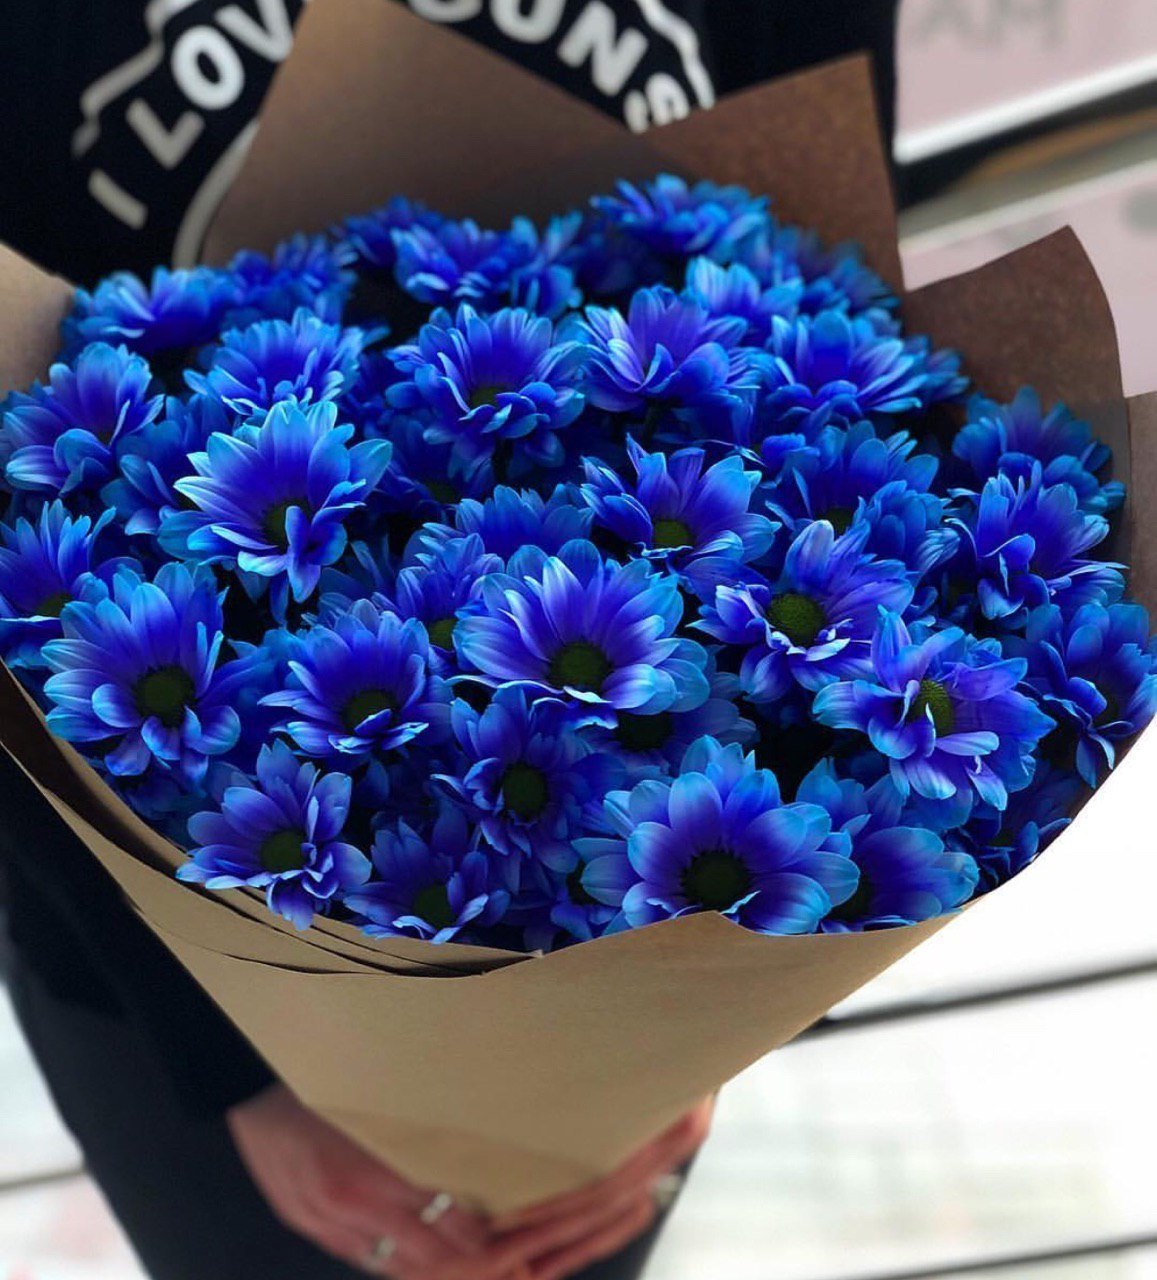 Синие садовые цветы